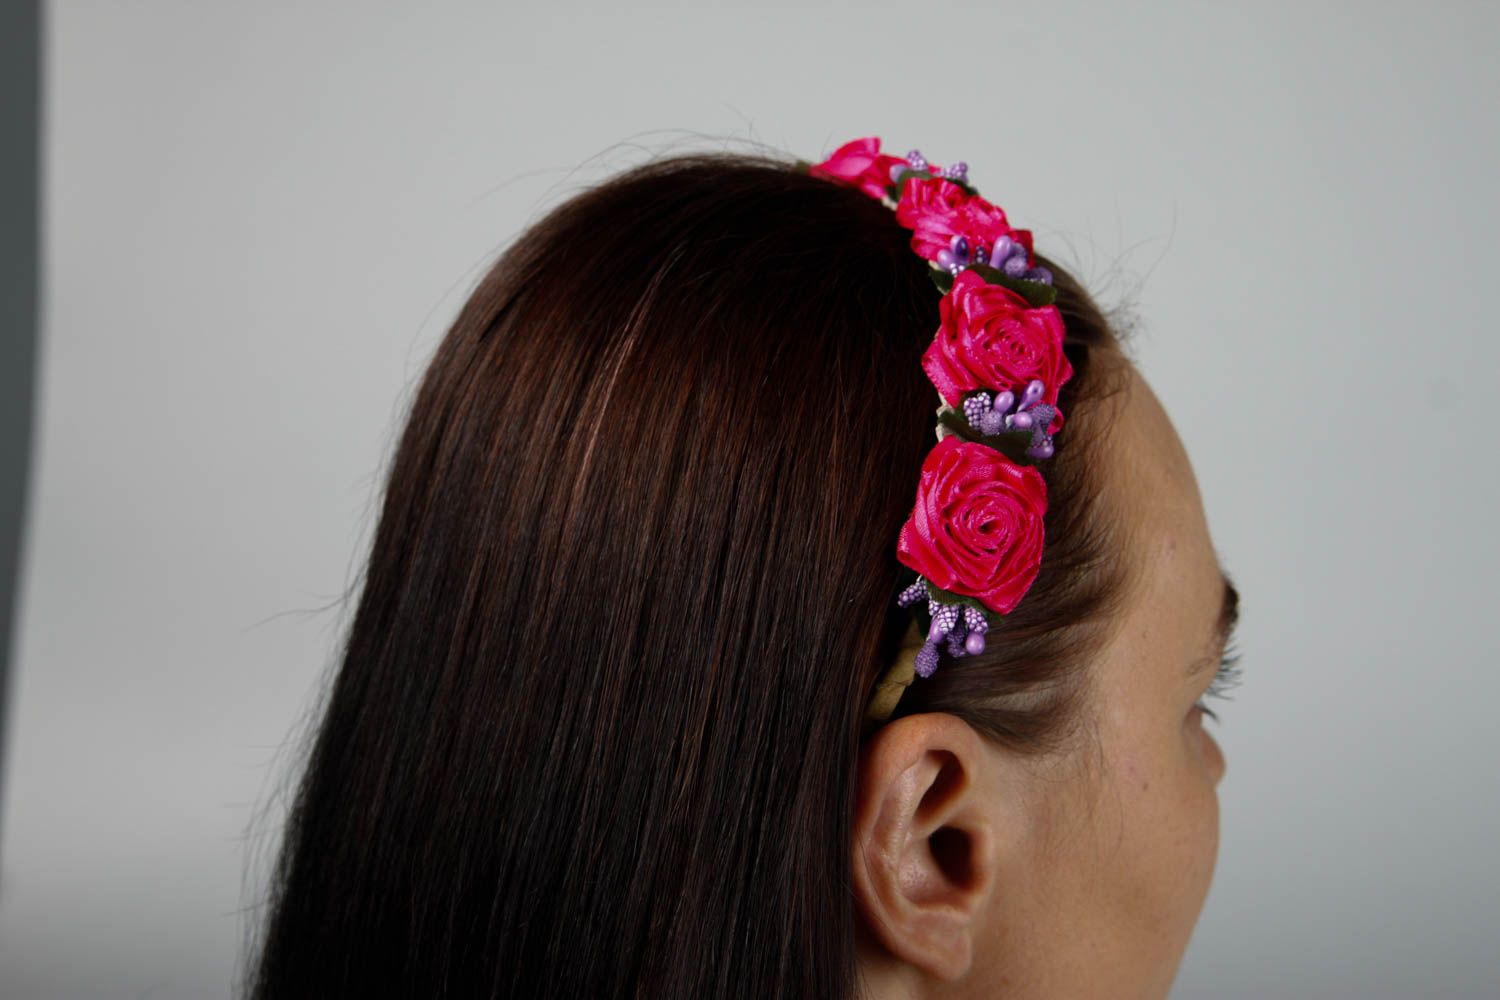 Аксессуар для волос ручной работы красивый обруч на голову женский аксессуар фото 2